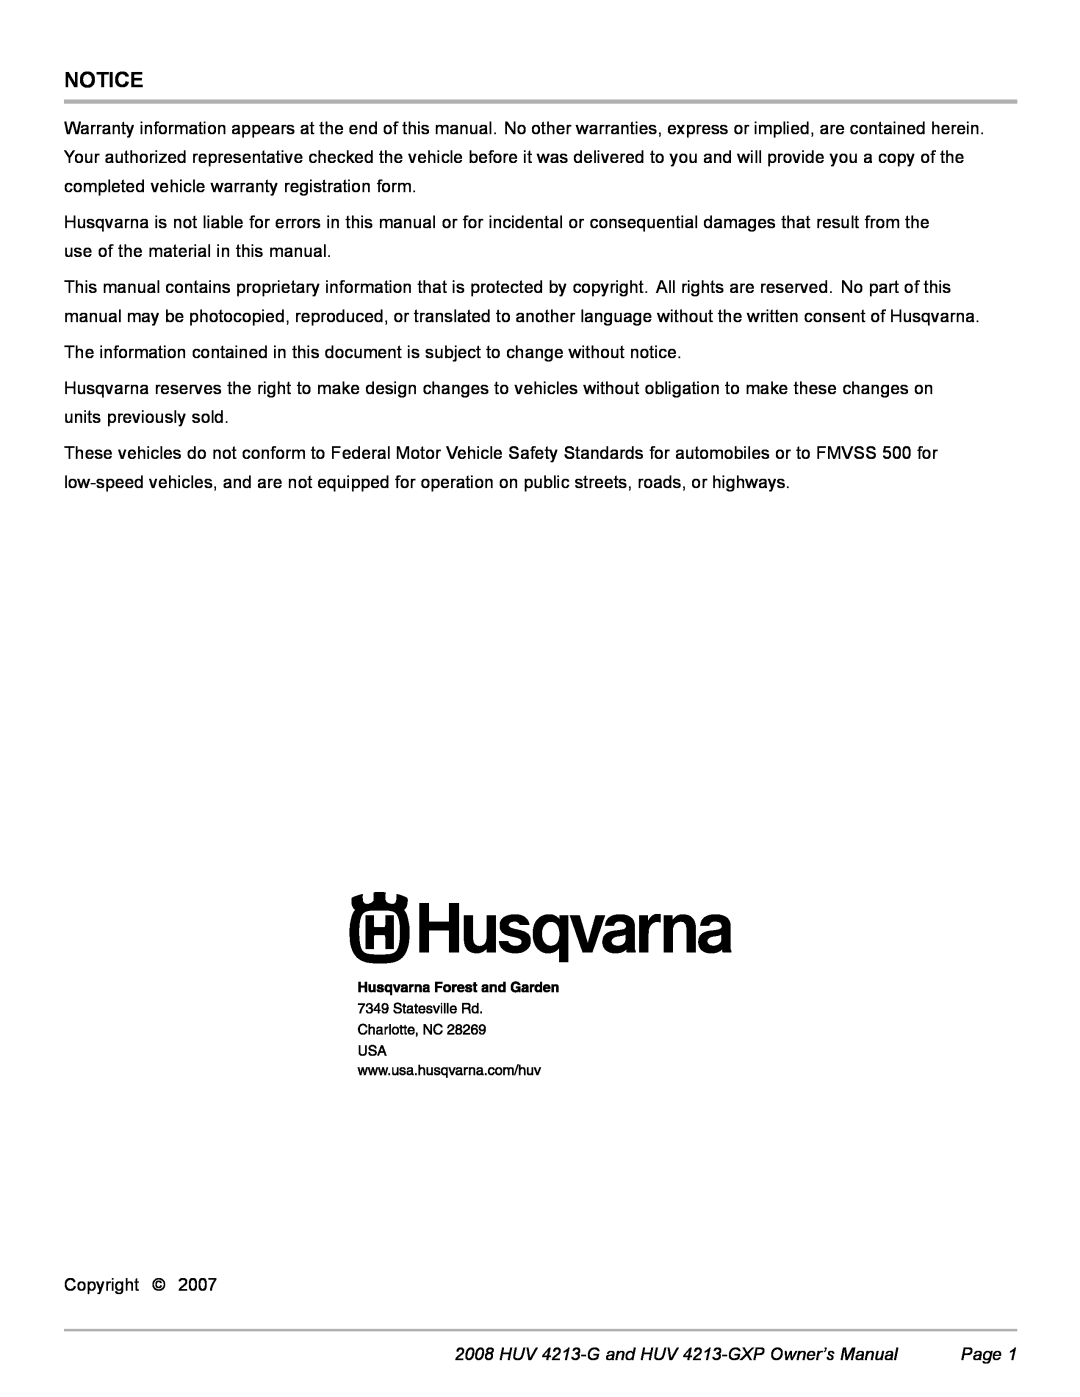 Husqvarna HUV 4213-GXP owner manual 